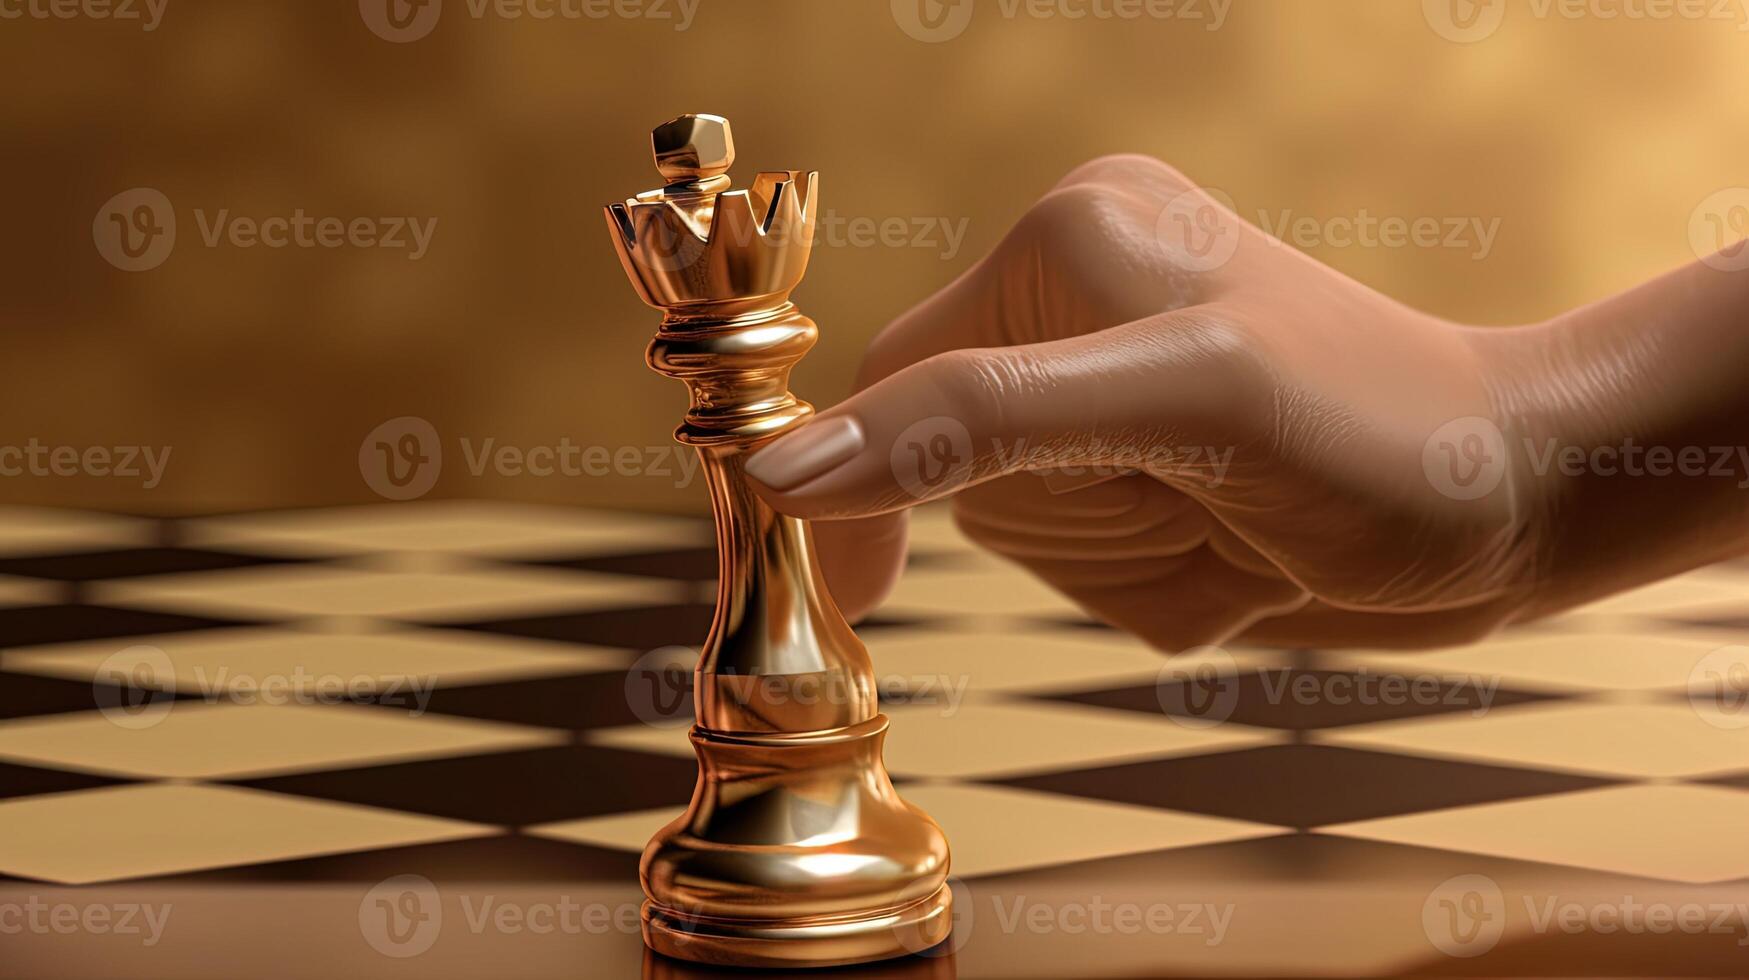 Peça de rainha de xadrez branca esculpida à mão em madeira em tabuleiro  feito à mão estratégia de negócios, conceito de tática